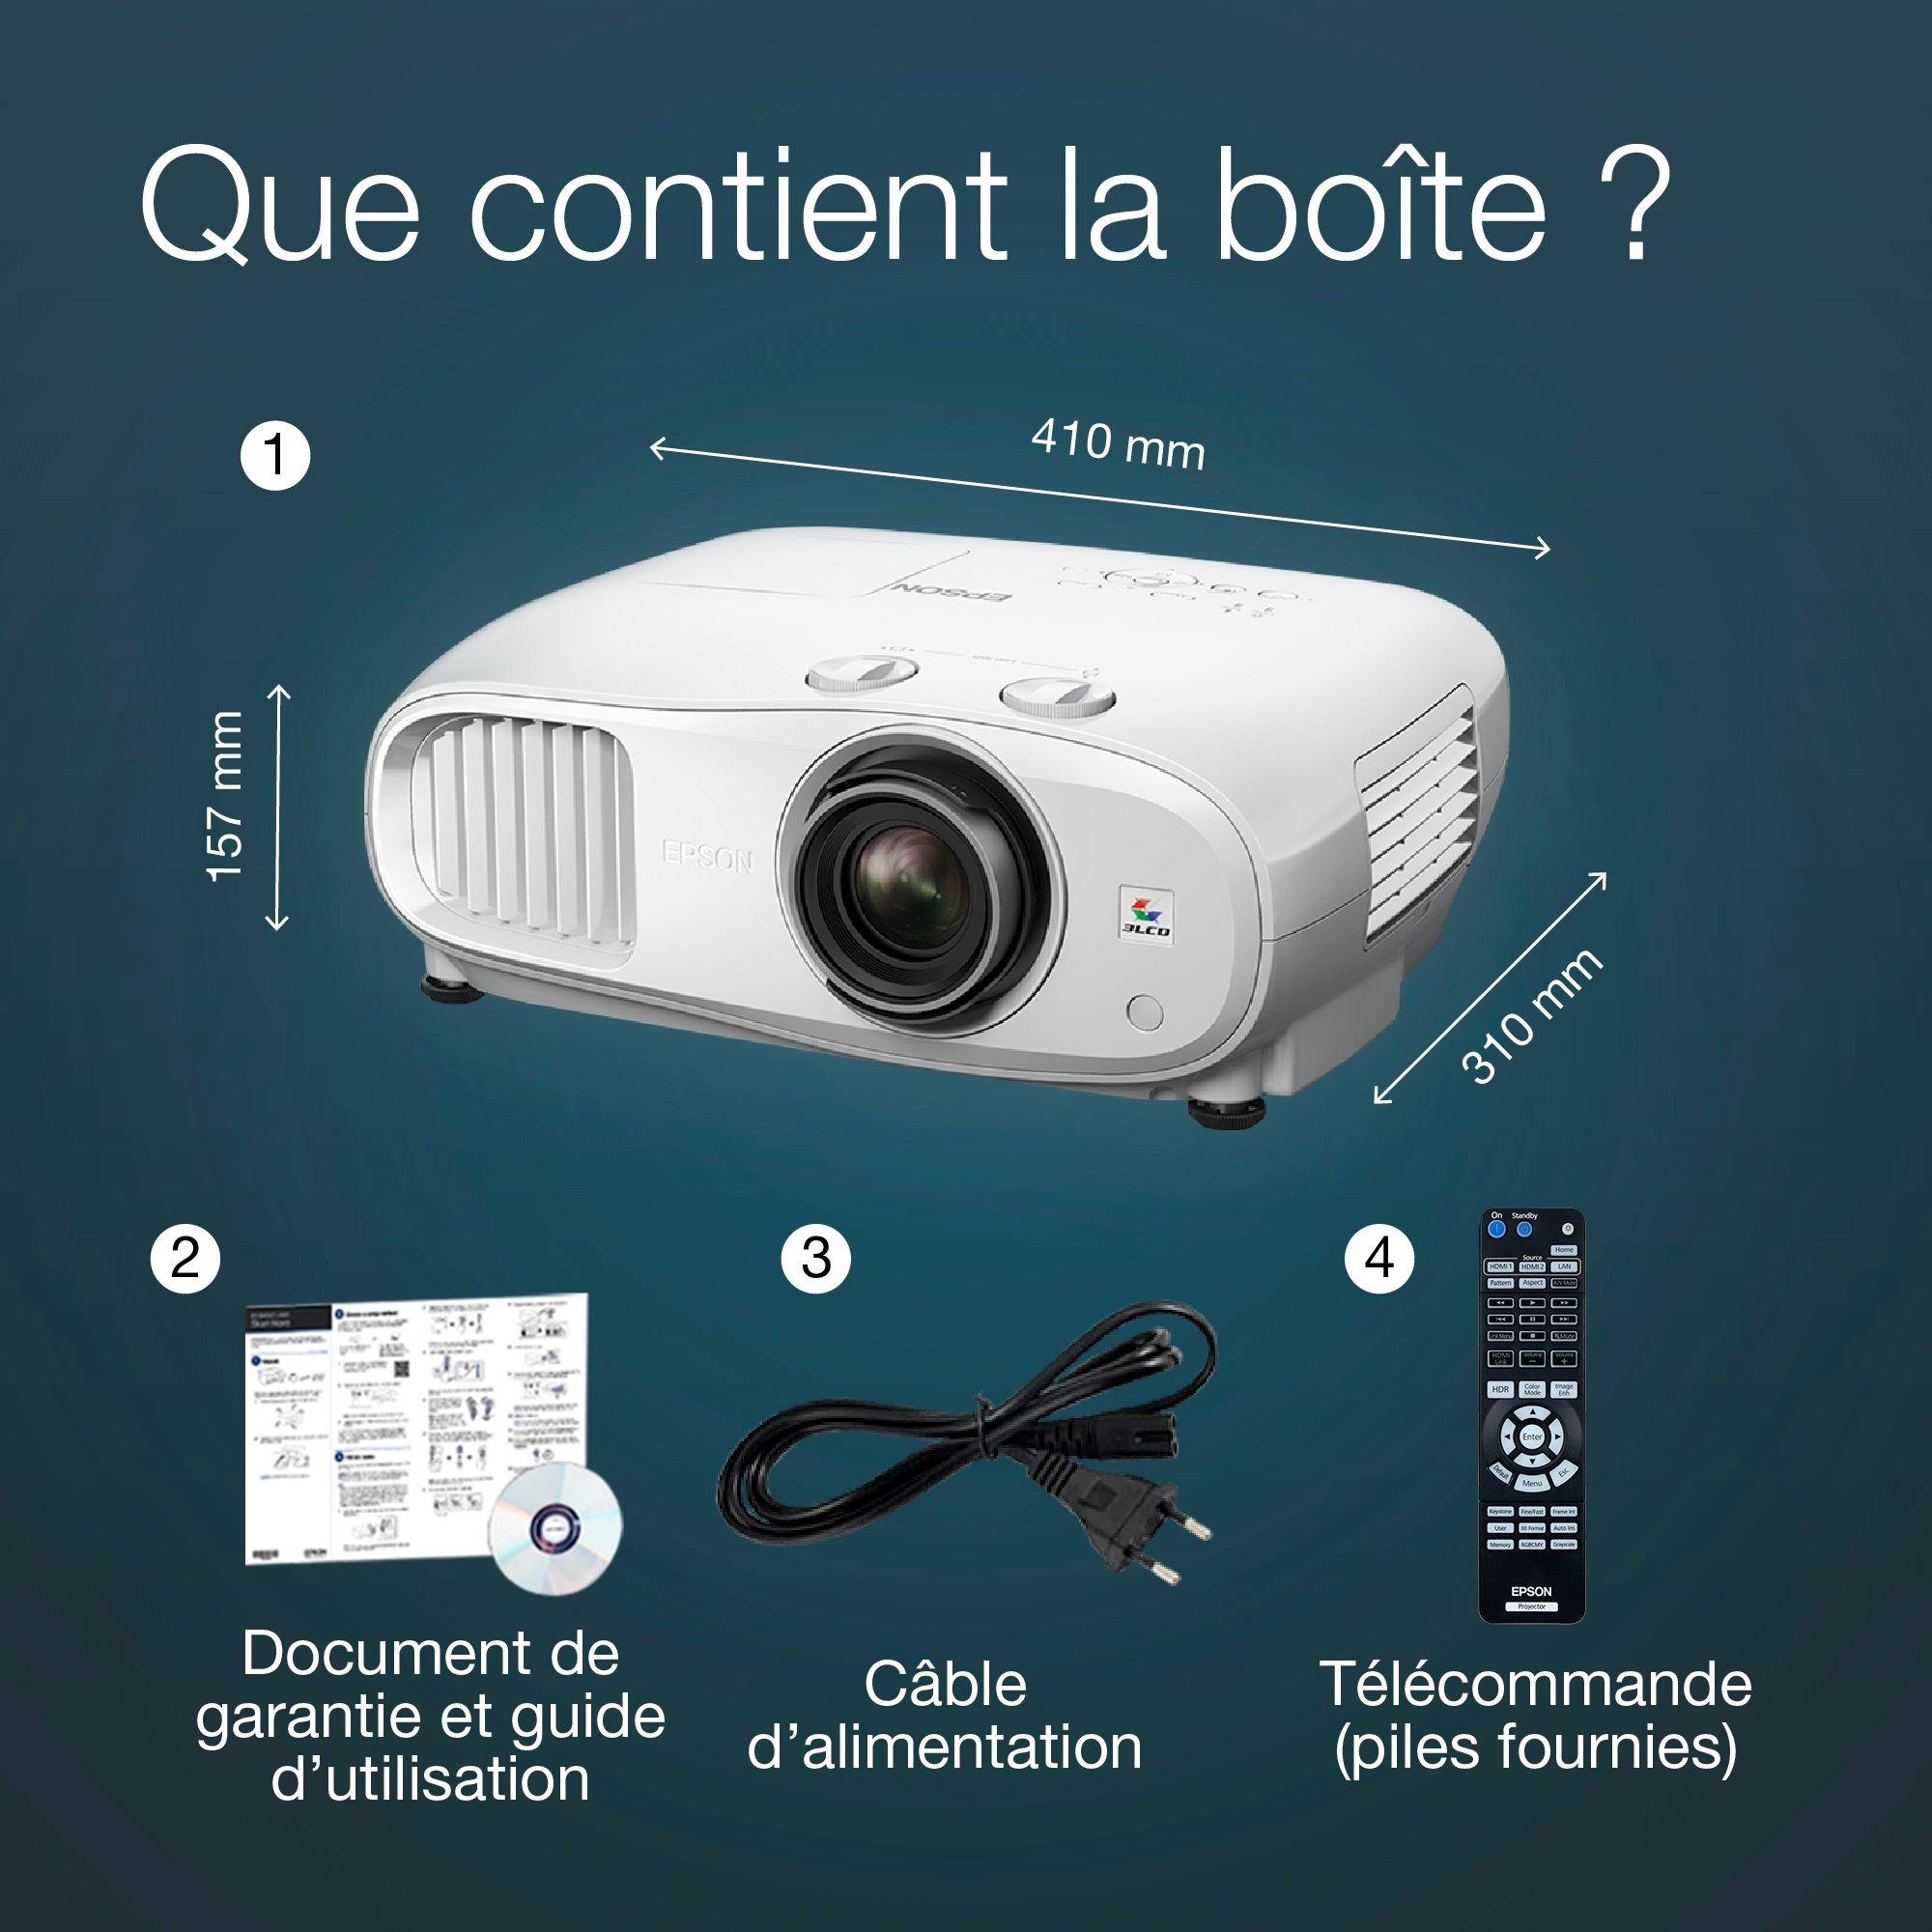 EH-TW7100 | Home cinéma | Projecteurs | Produits | Epson France